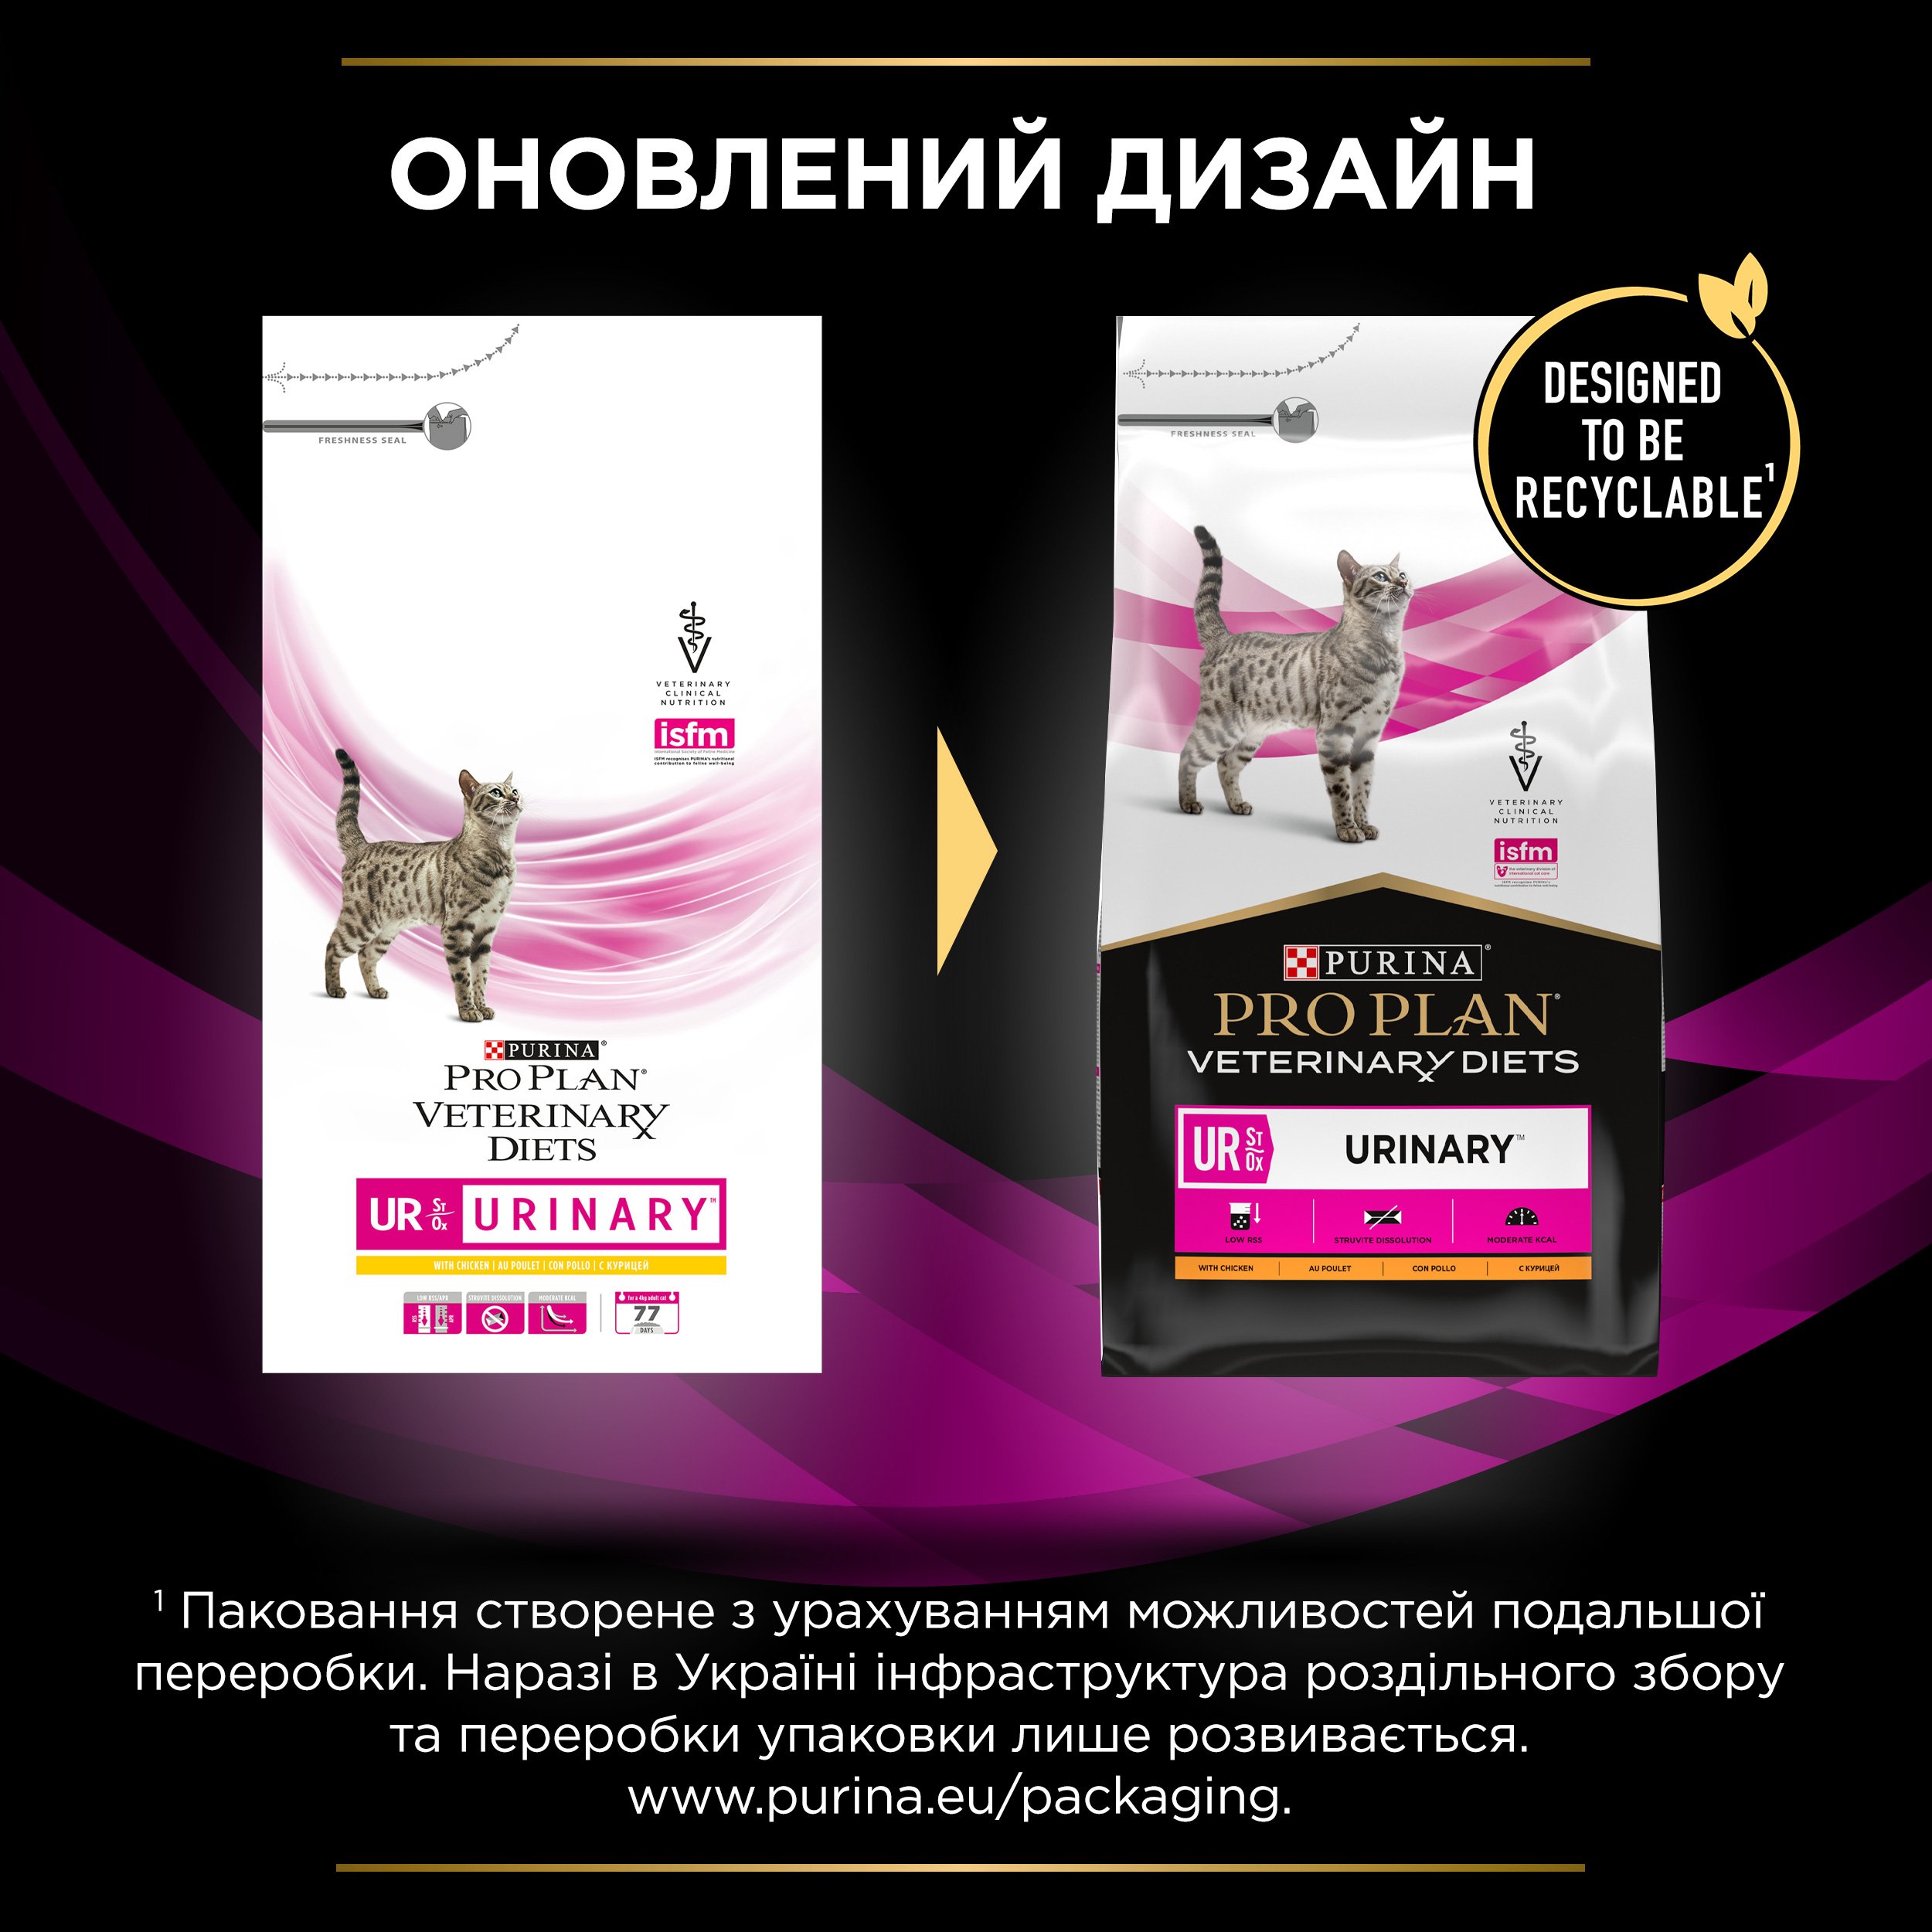 Сухой корм для кошек Purina Pro Plan Veterinary Diets UR Urinary, с курицей, 5 кг - фото 5